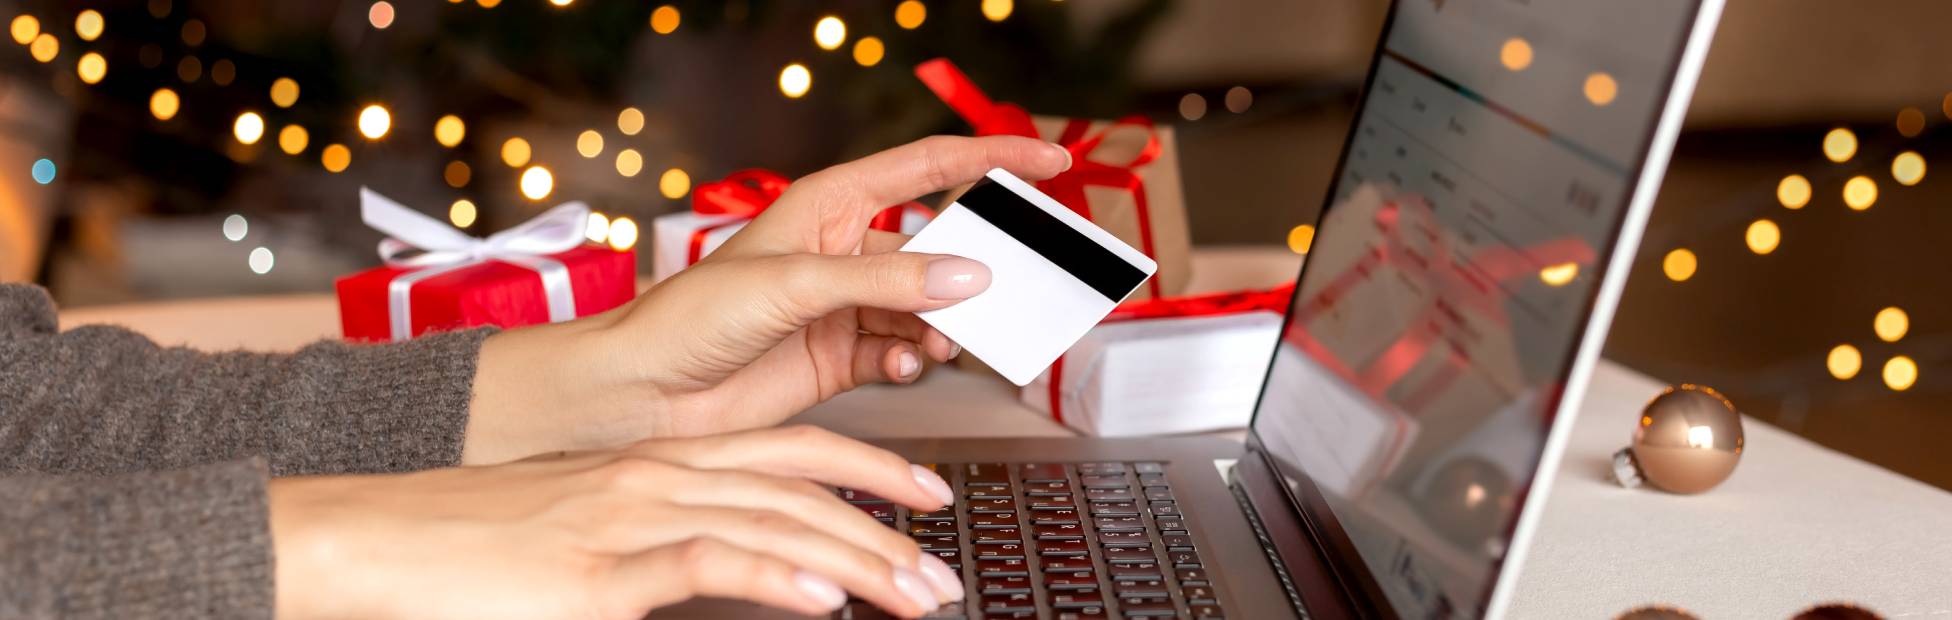 les mains d'une femme tenant une carte de crédit, faisant du shopping sur un ordinateur portable.